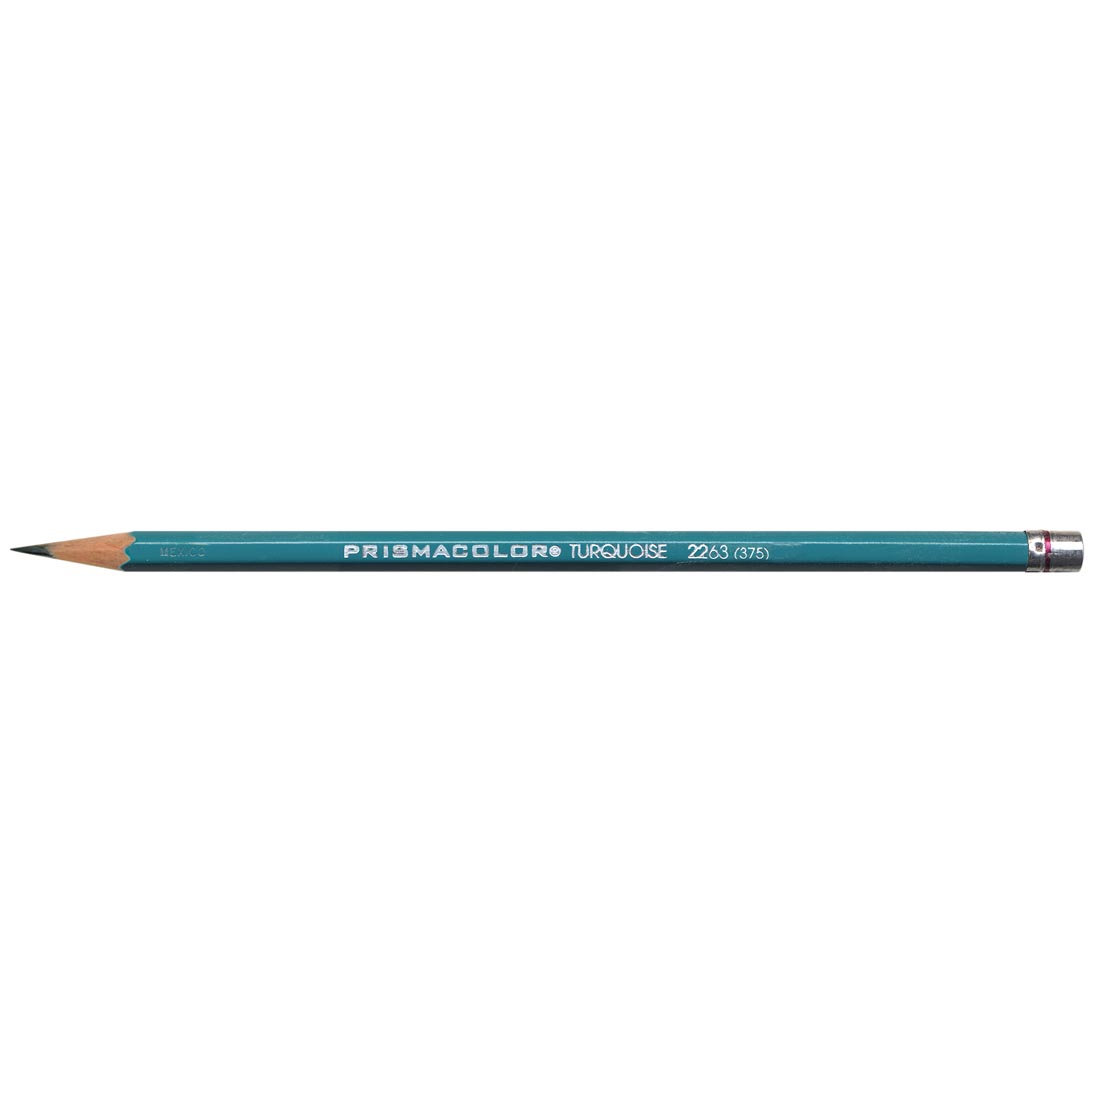 Prismacolor Premier Turquoise Drawing Pencil